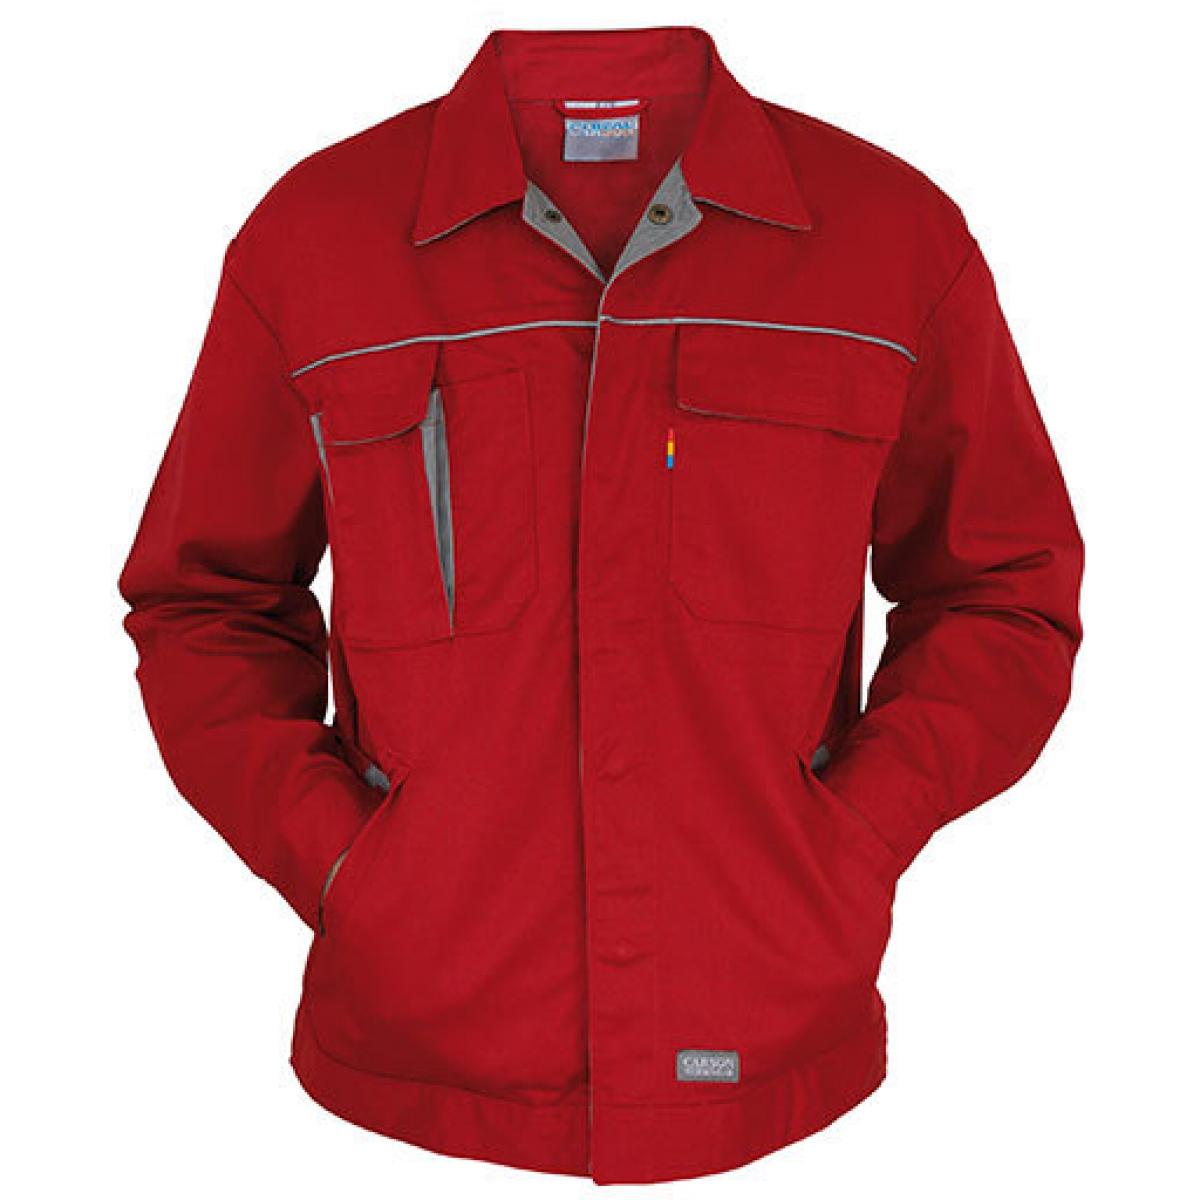 Hersteller: Carson Contrast Herstellernummer: CC710 Artikelbezeichnung: Herren Contrast Work Jacket / Bei 60 Grad waschbar Farbe: Red/Grey